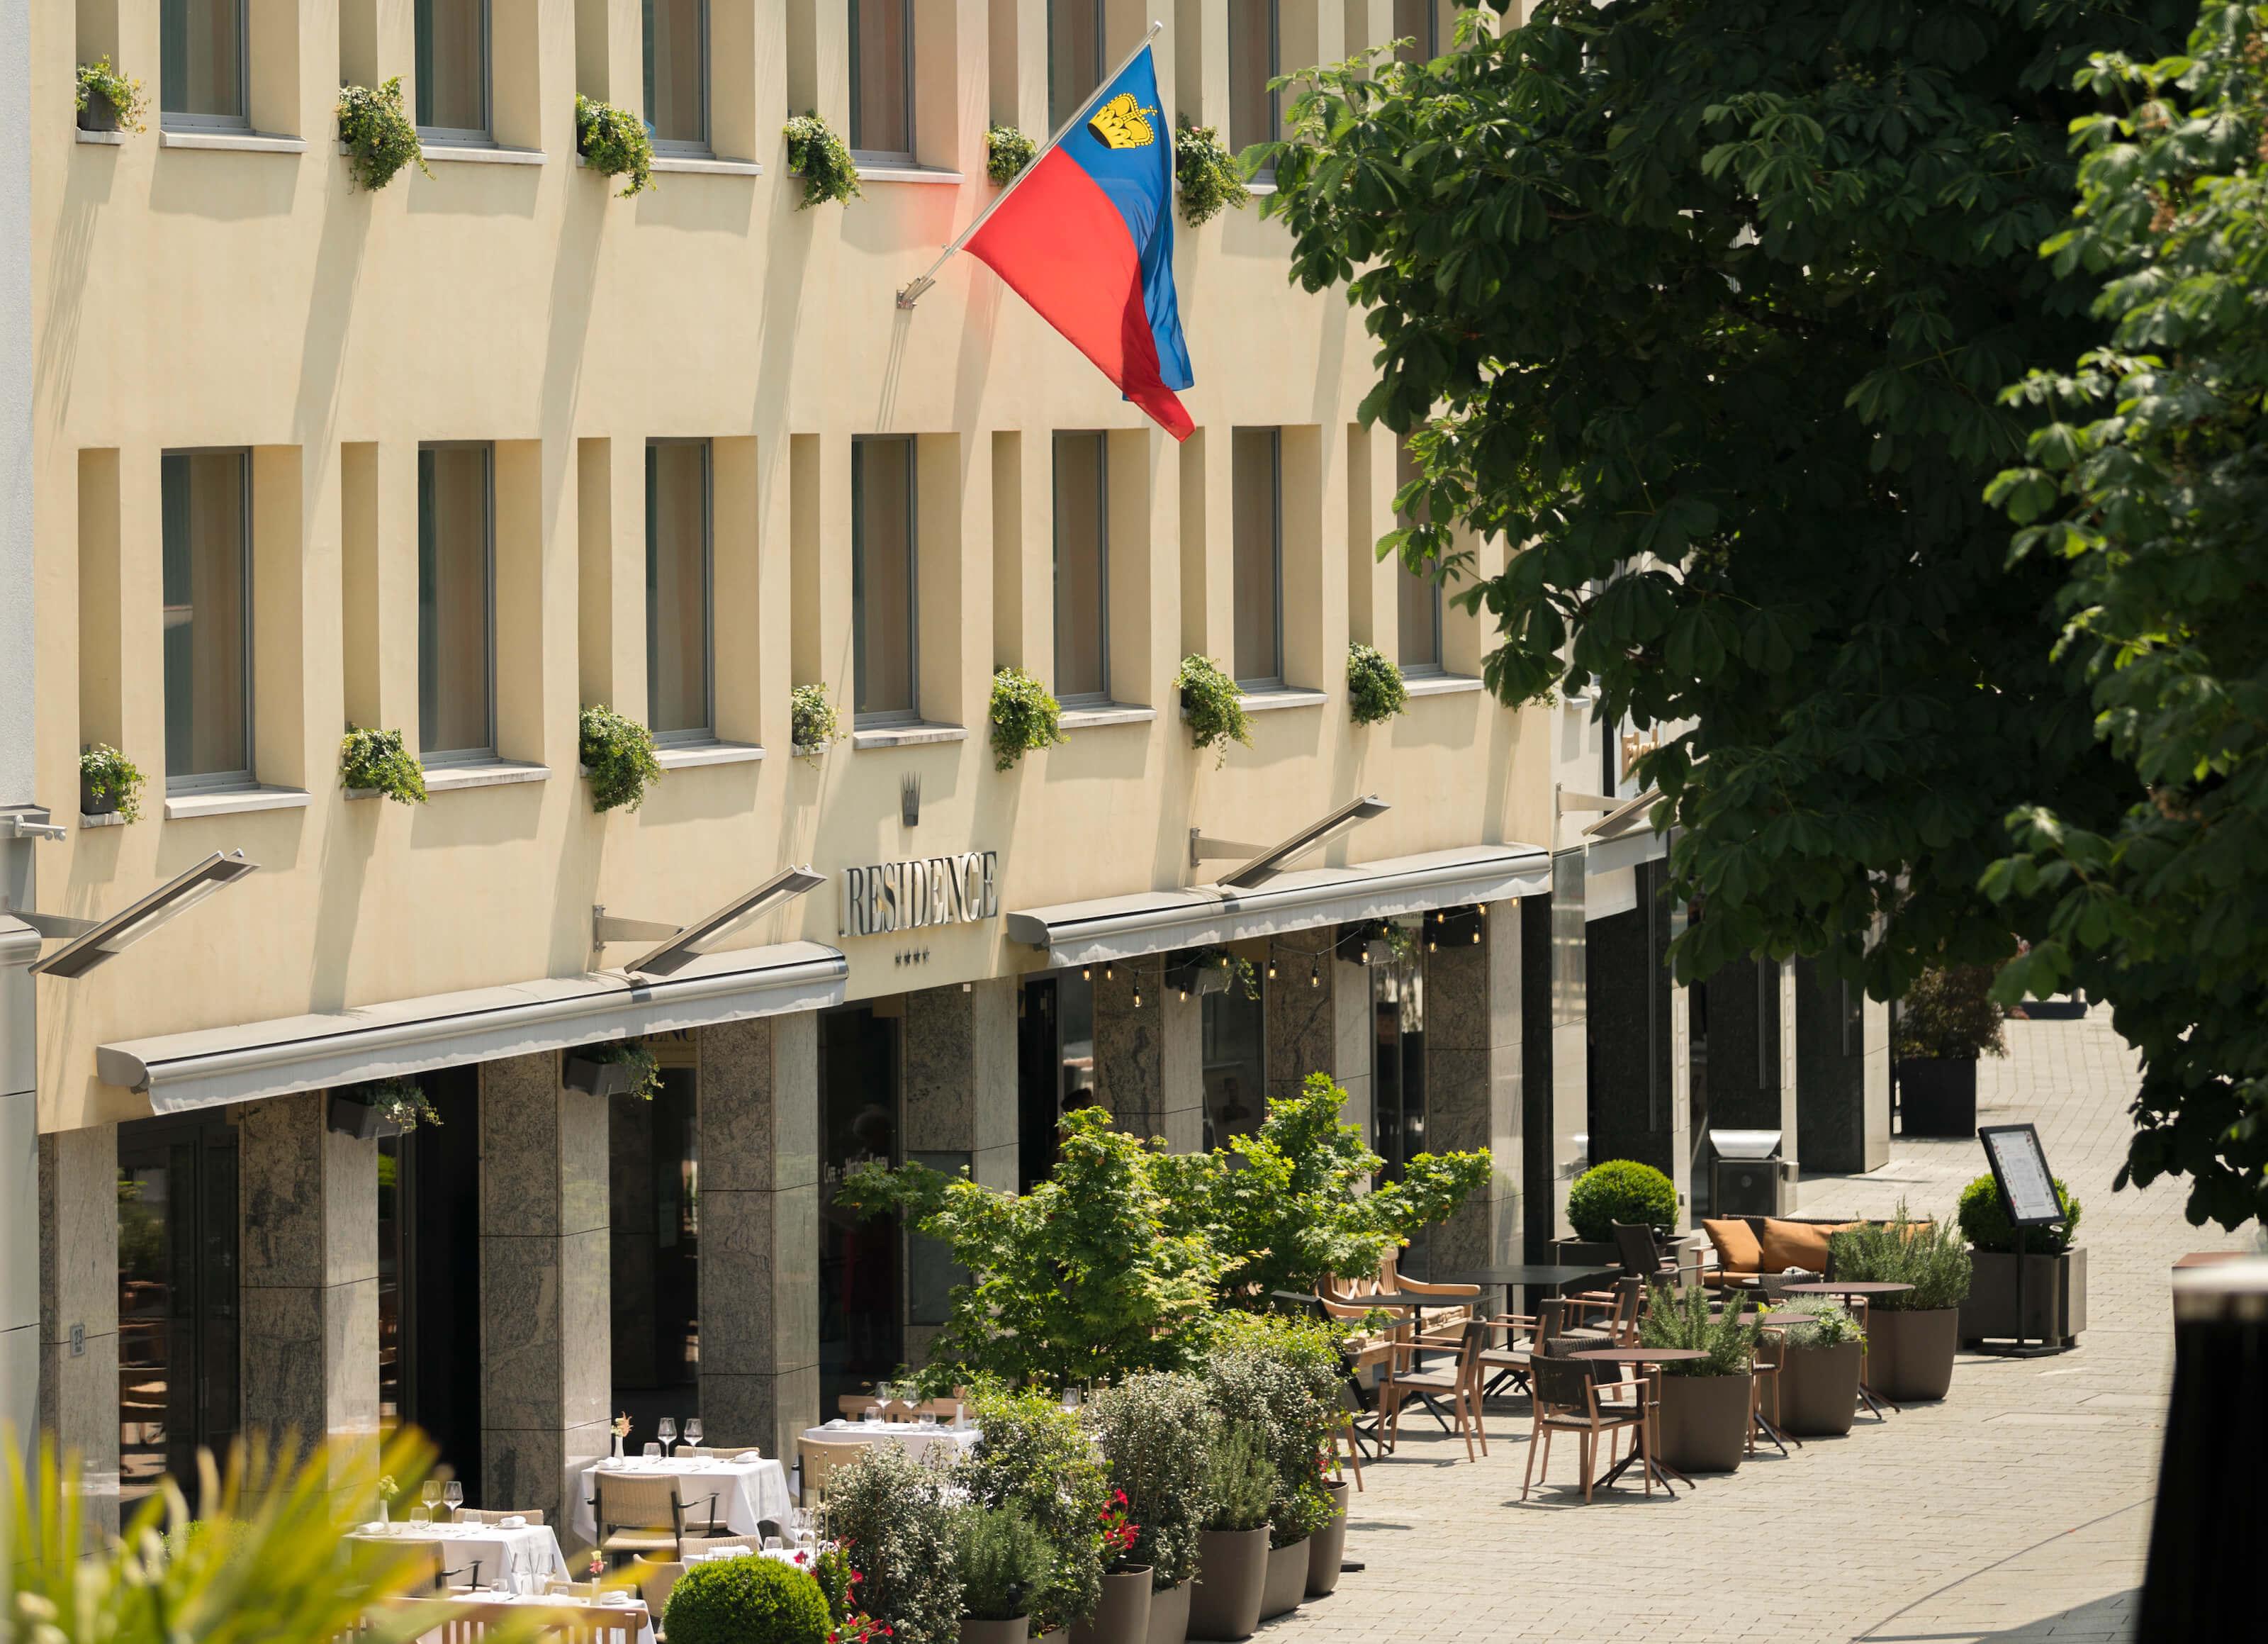 Residence Hotel Vaduz Liechtenstein - Best Hotel in Liechtenstein